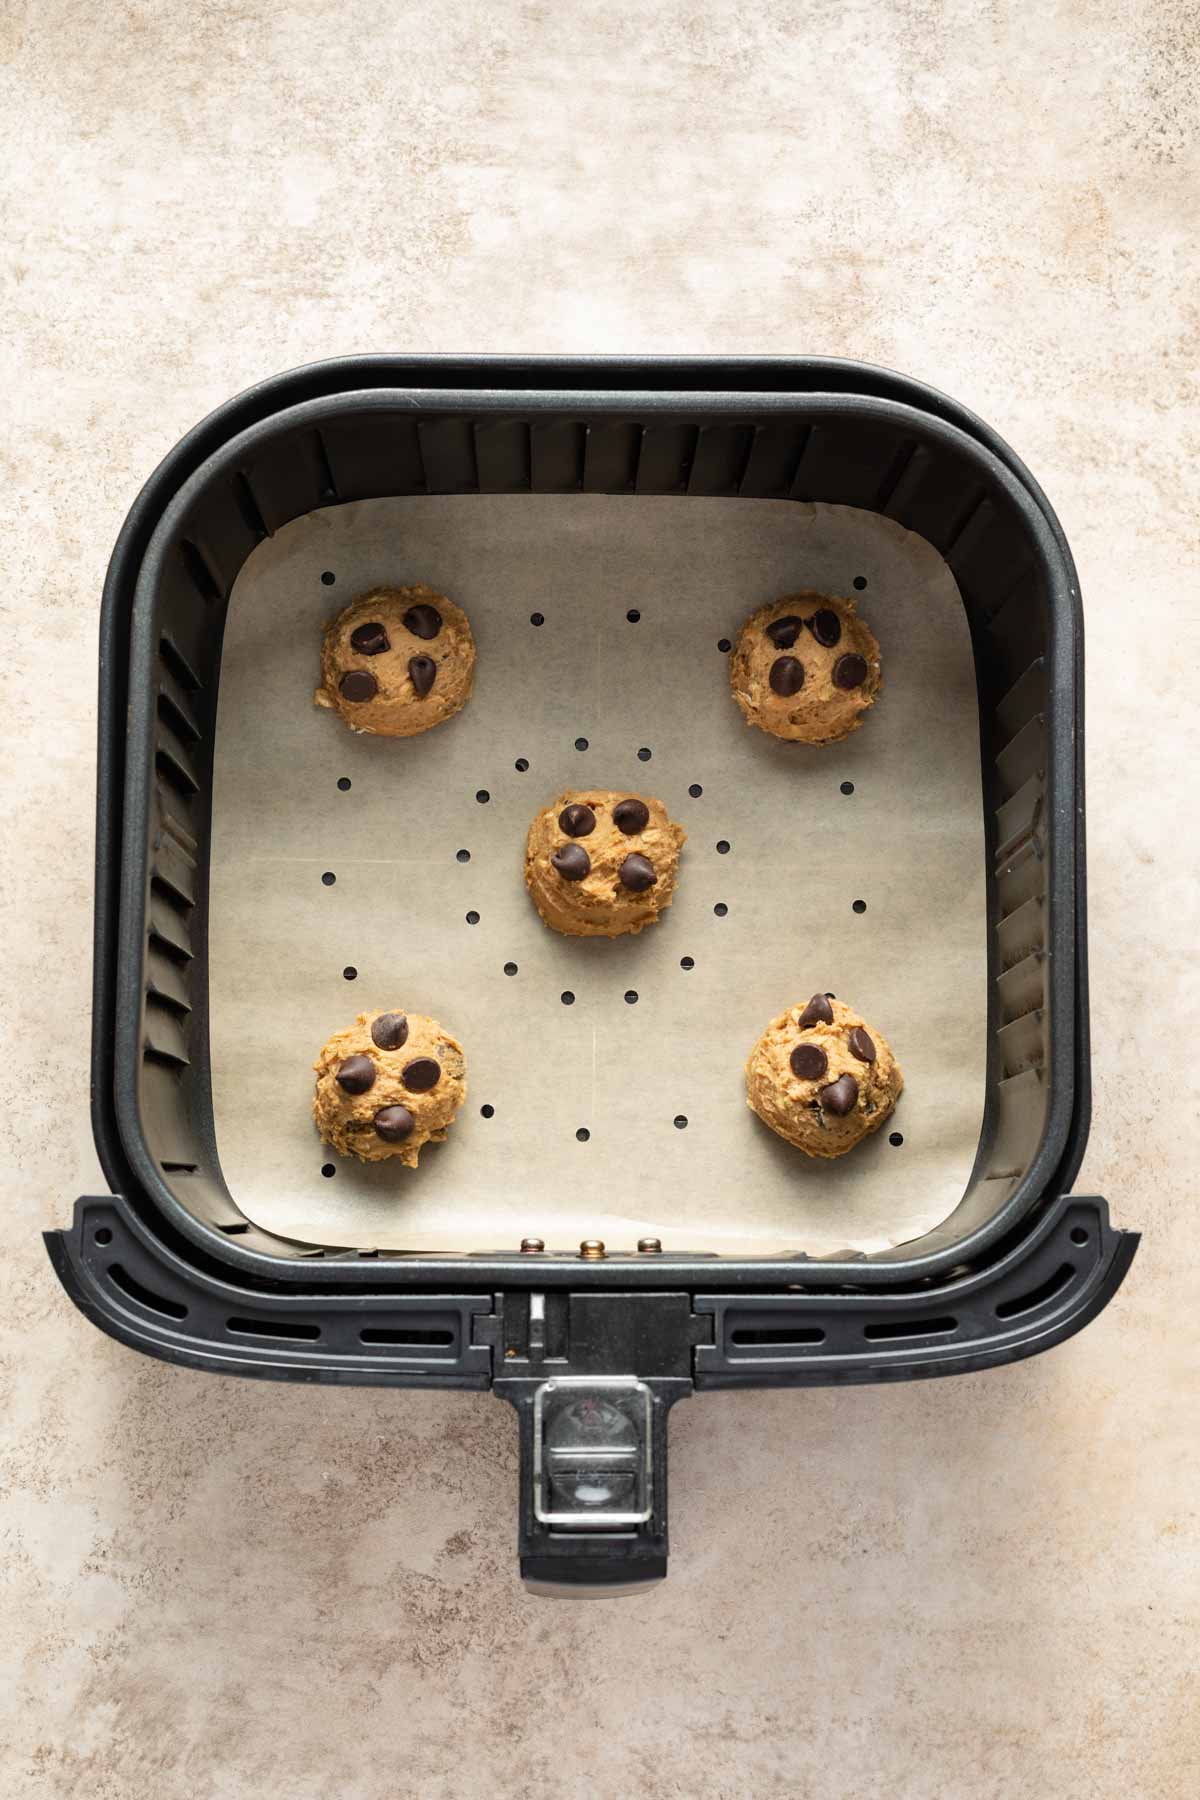 Cookie dough balls in an air fryer basket.